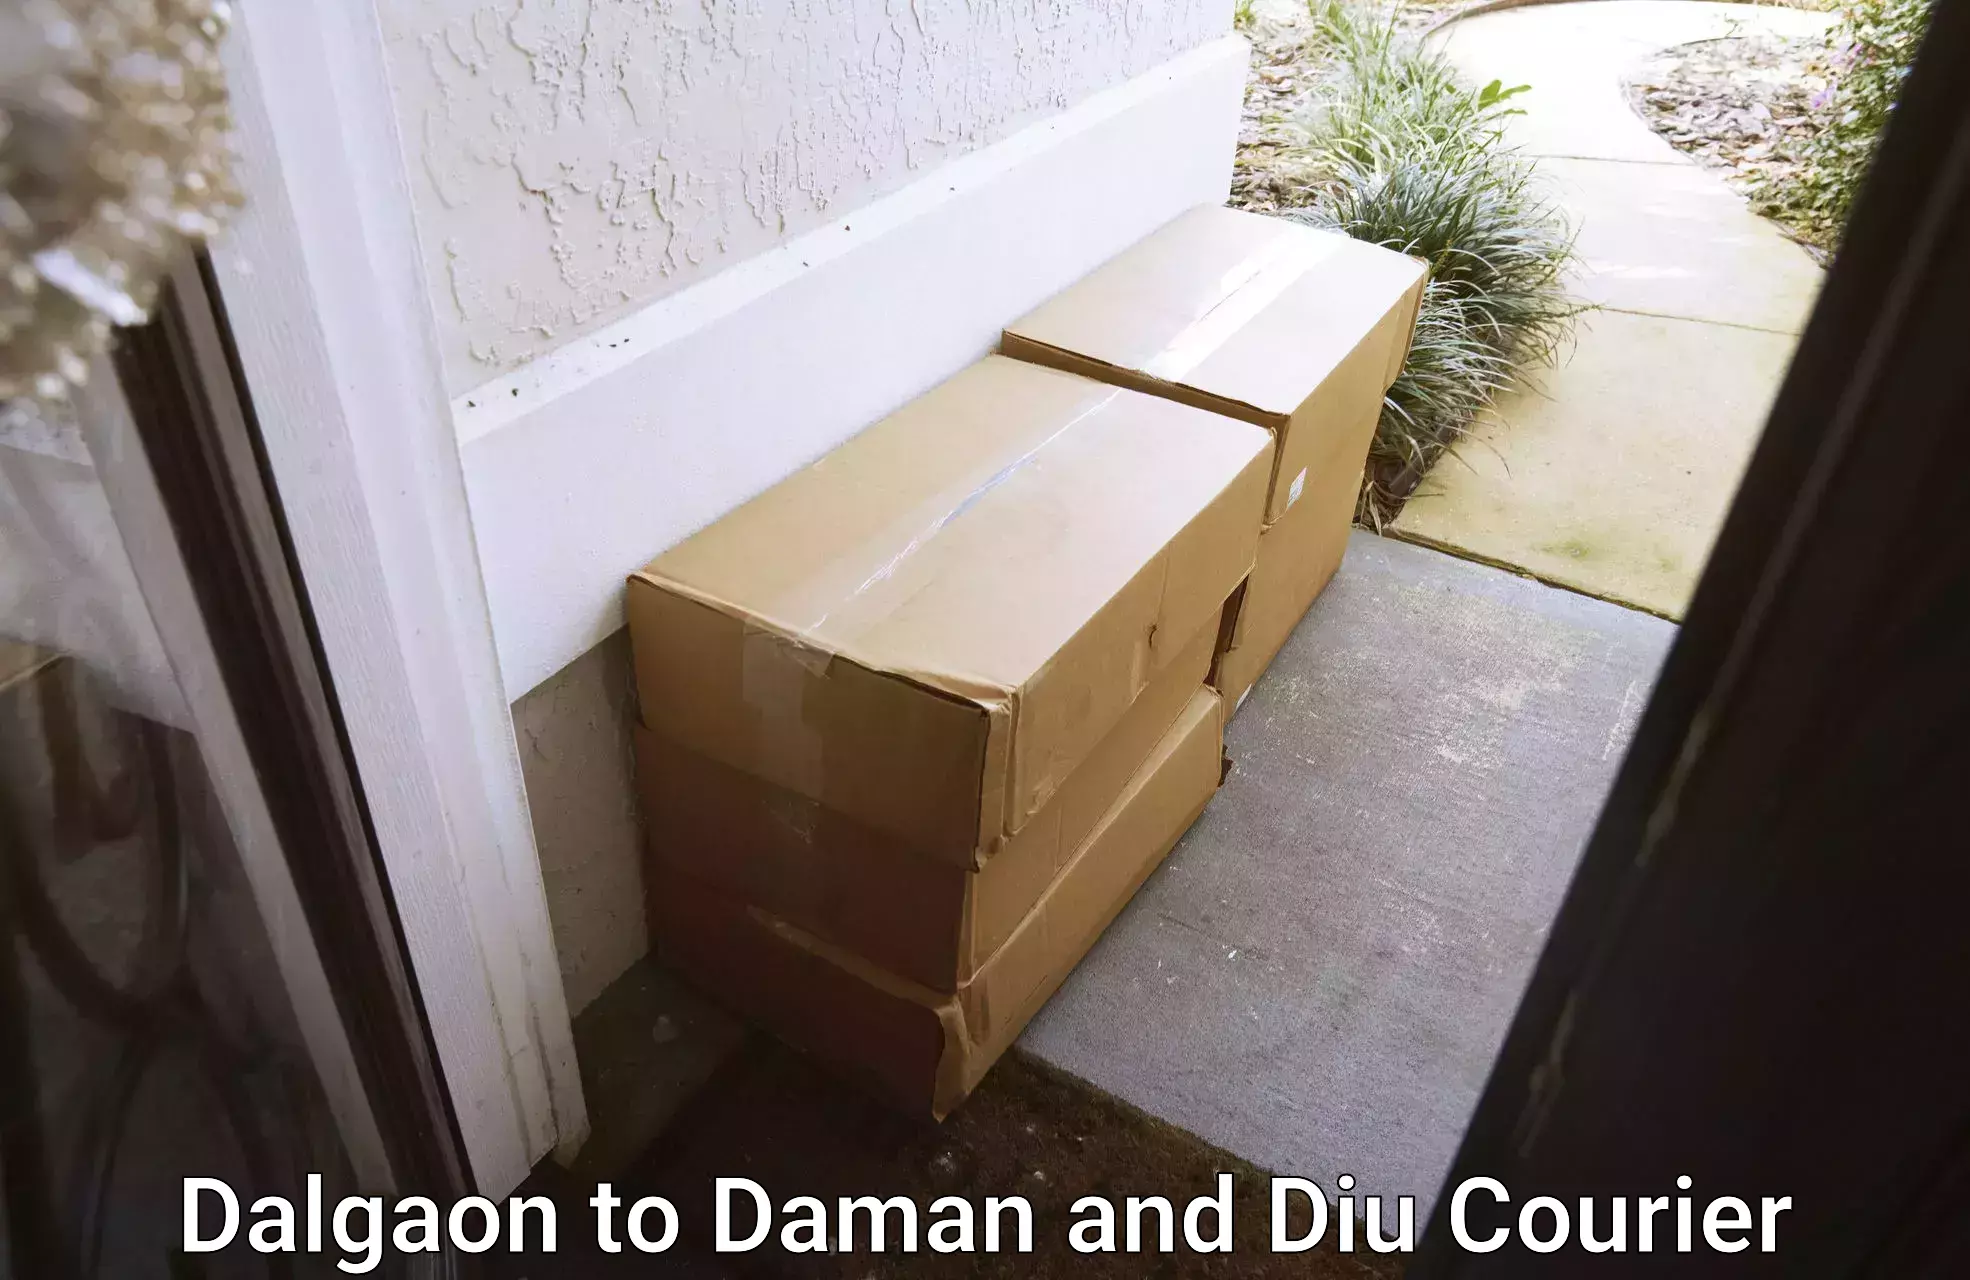 Bulk courier orders Dalgaon to Diu